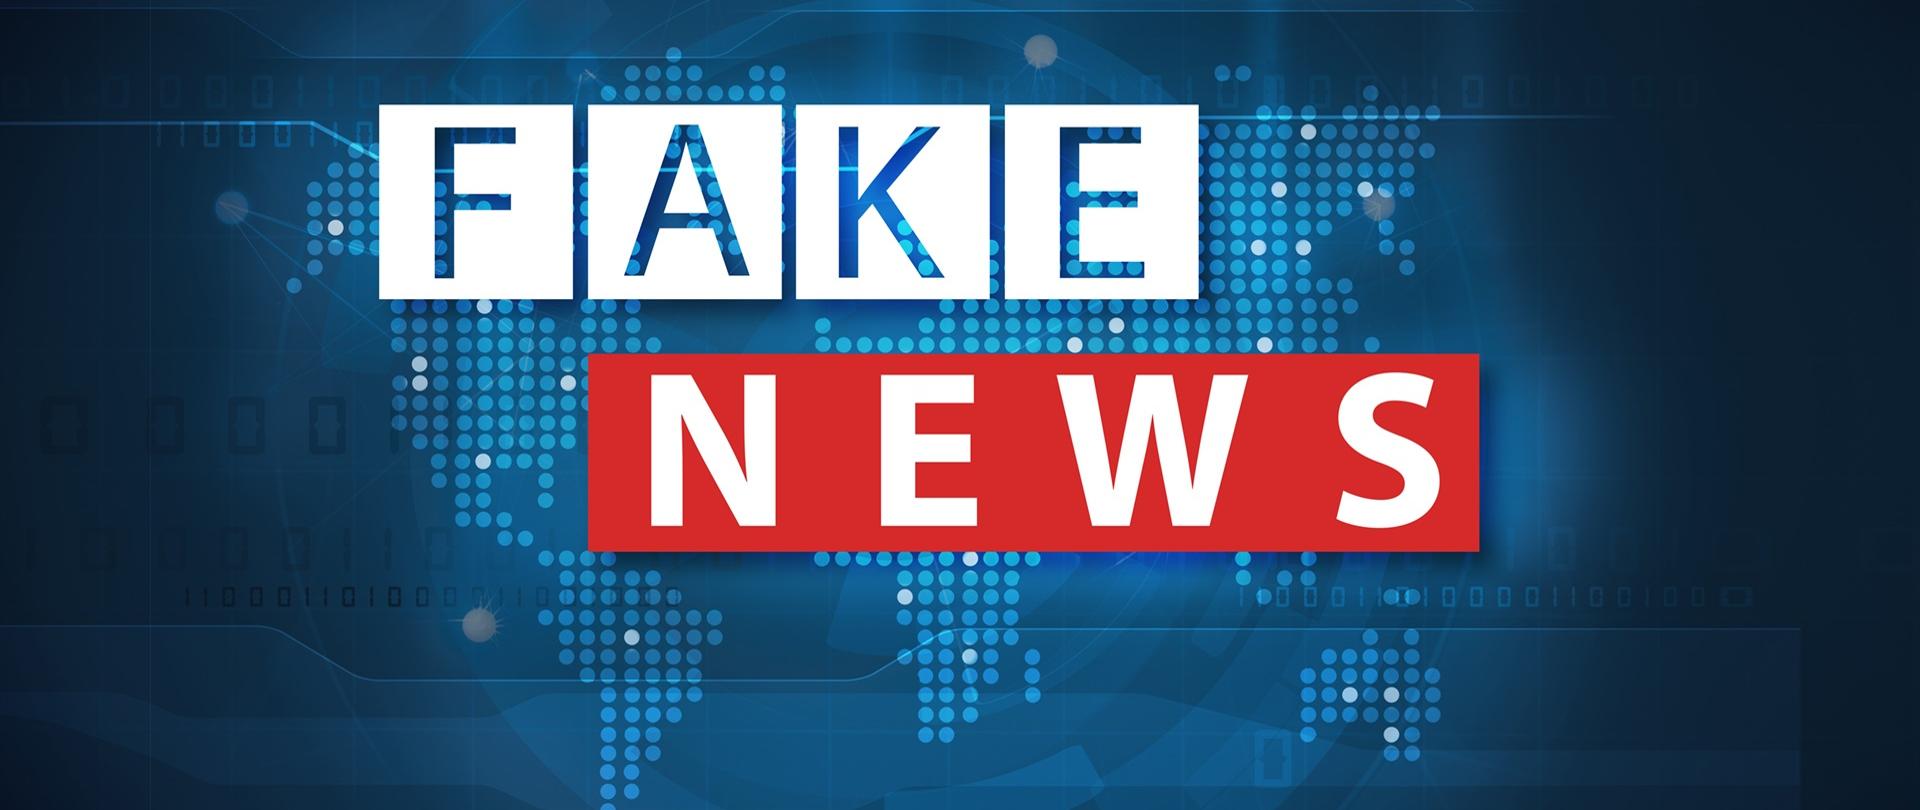 Napis "Fake news" na tle niebieskiej mapy świata